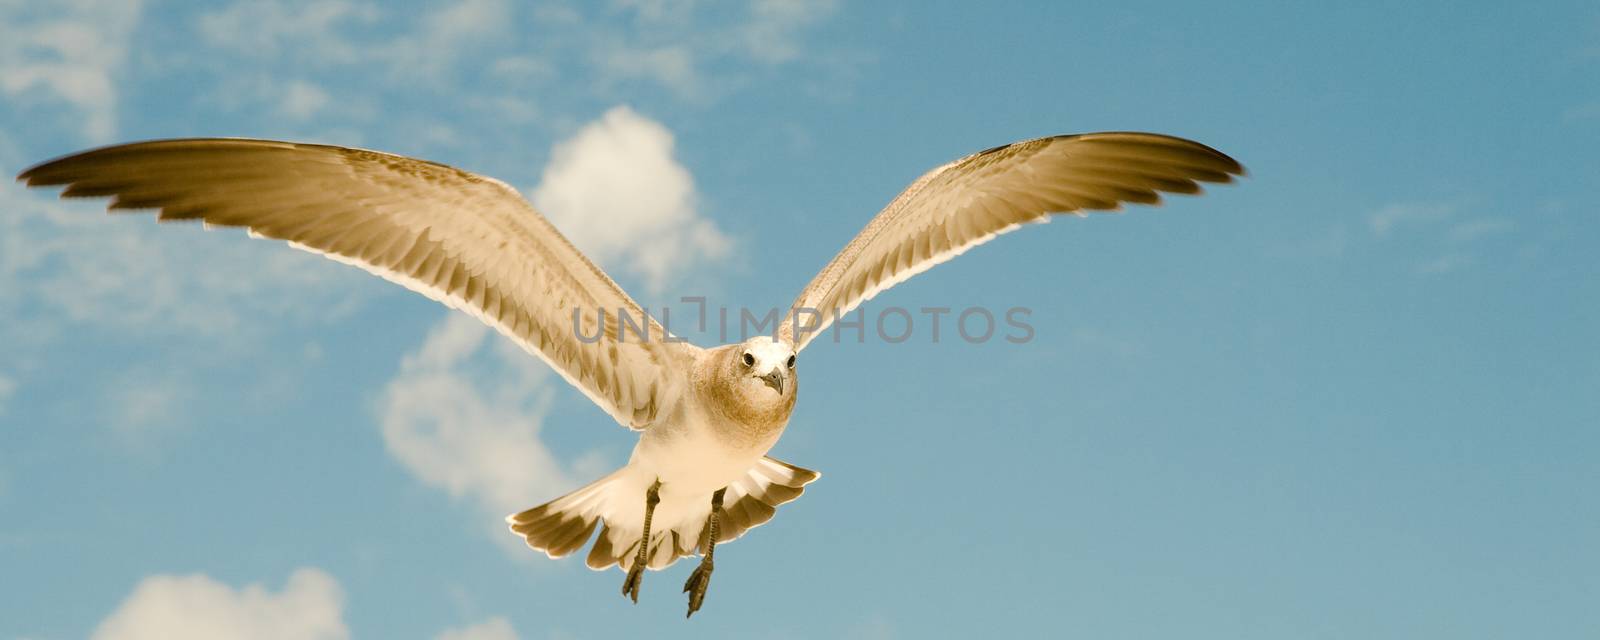 Seagull in flight by CelsoDiniz